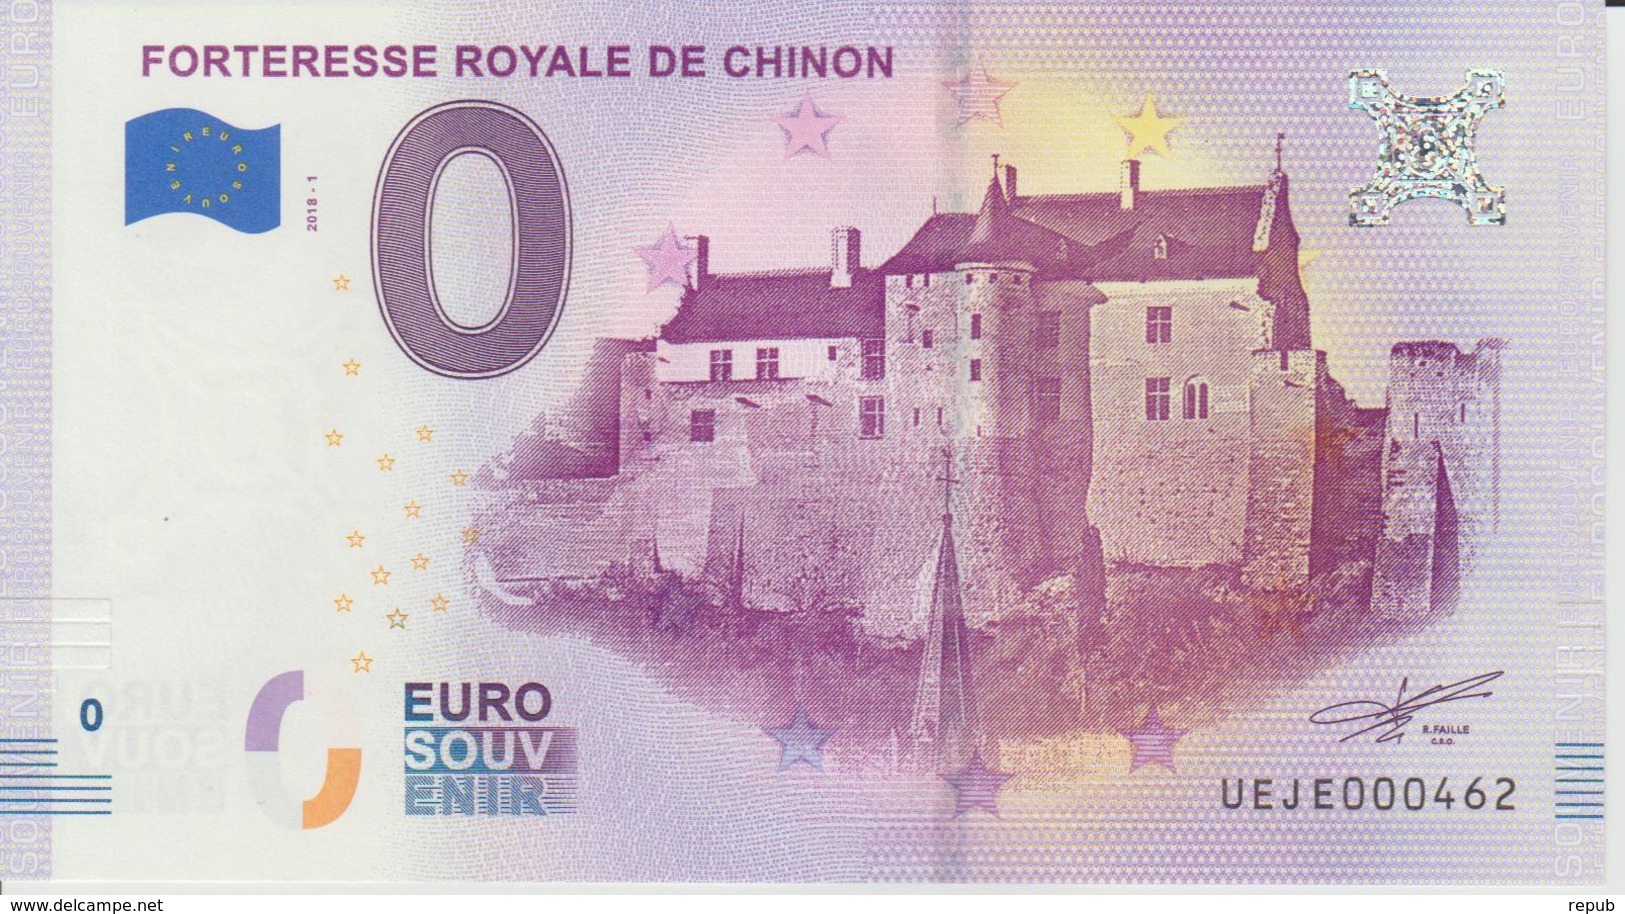 Billet Touristique 0 Euro Souvenir France 37 Forteresse Royale De Chinon  2018-1 N°UEJE000462 - Essais Privés / Non-officiels